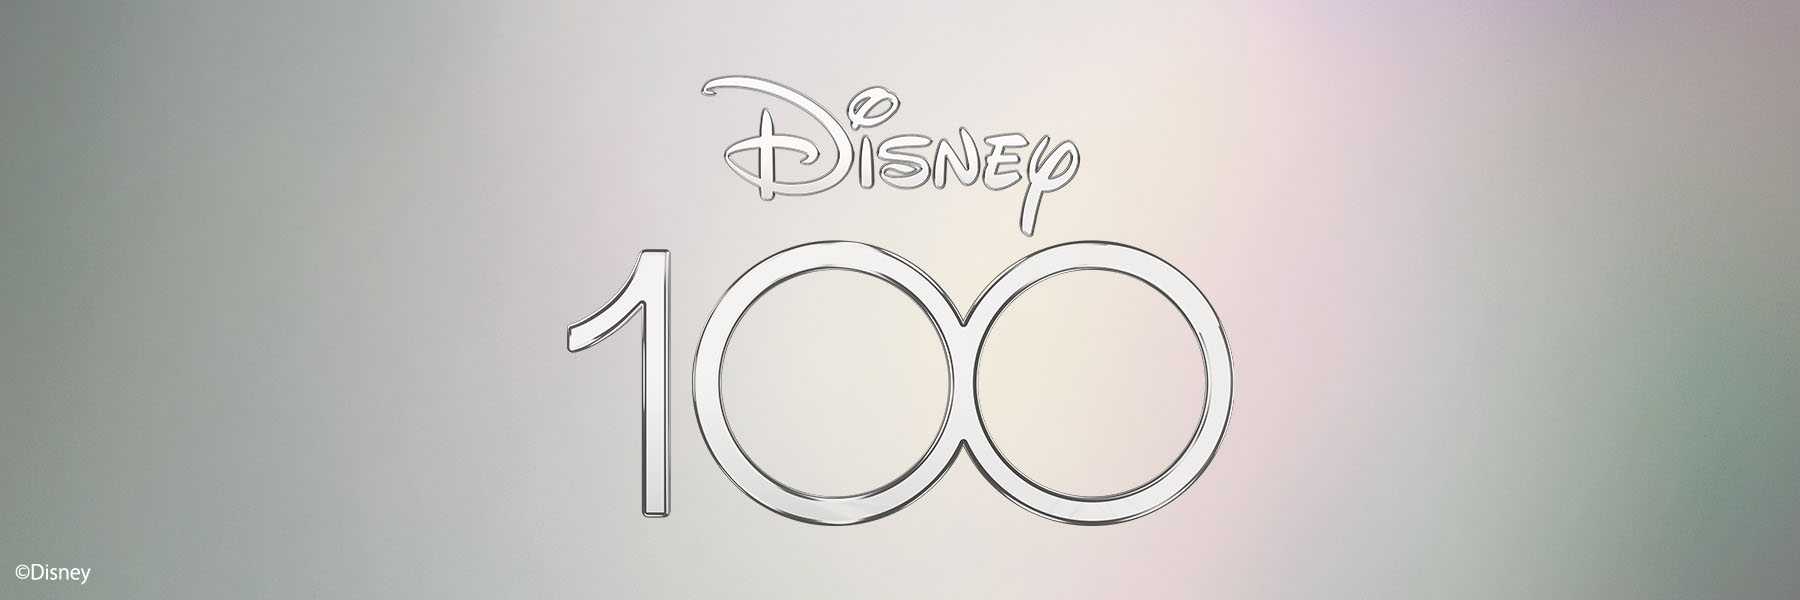 Disney 100 YEARS OF WONDER